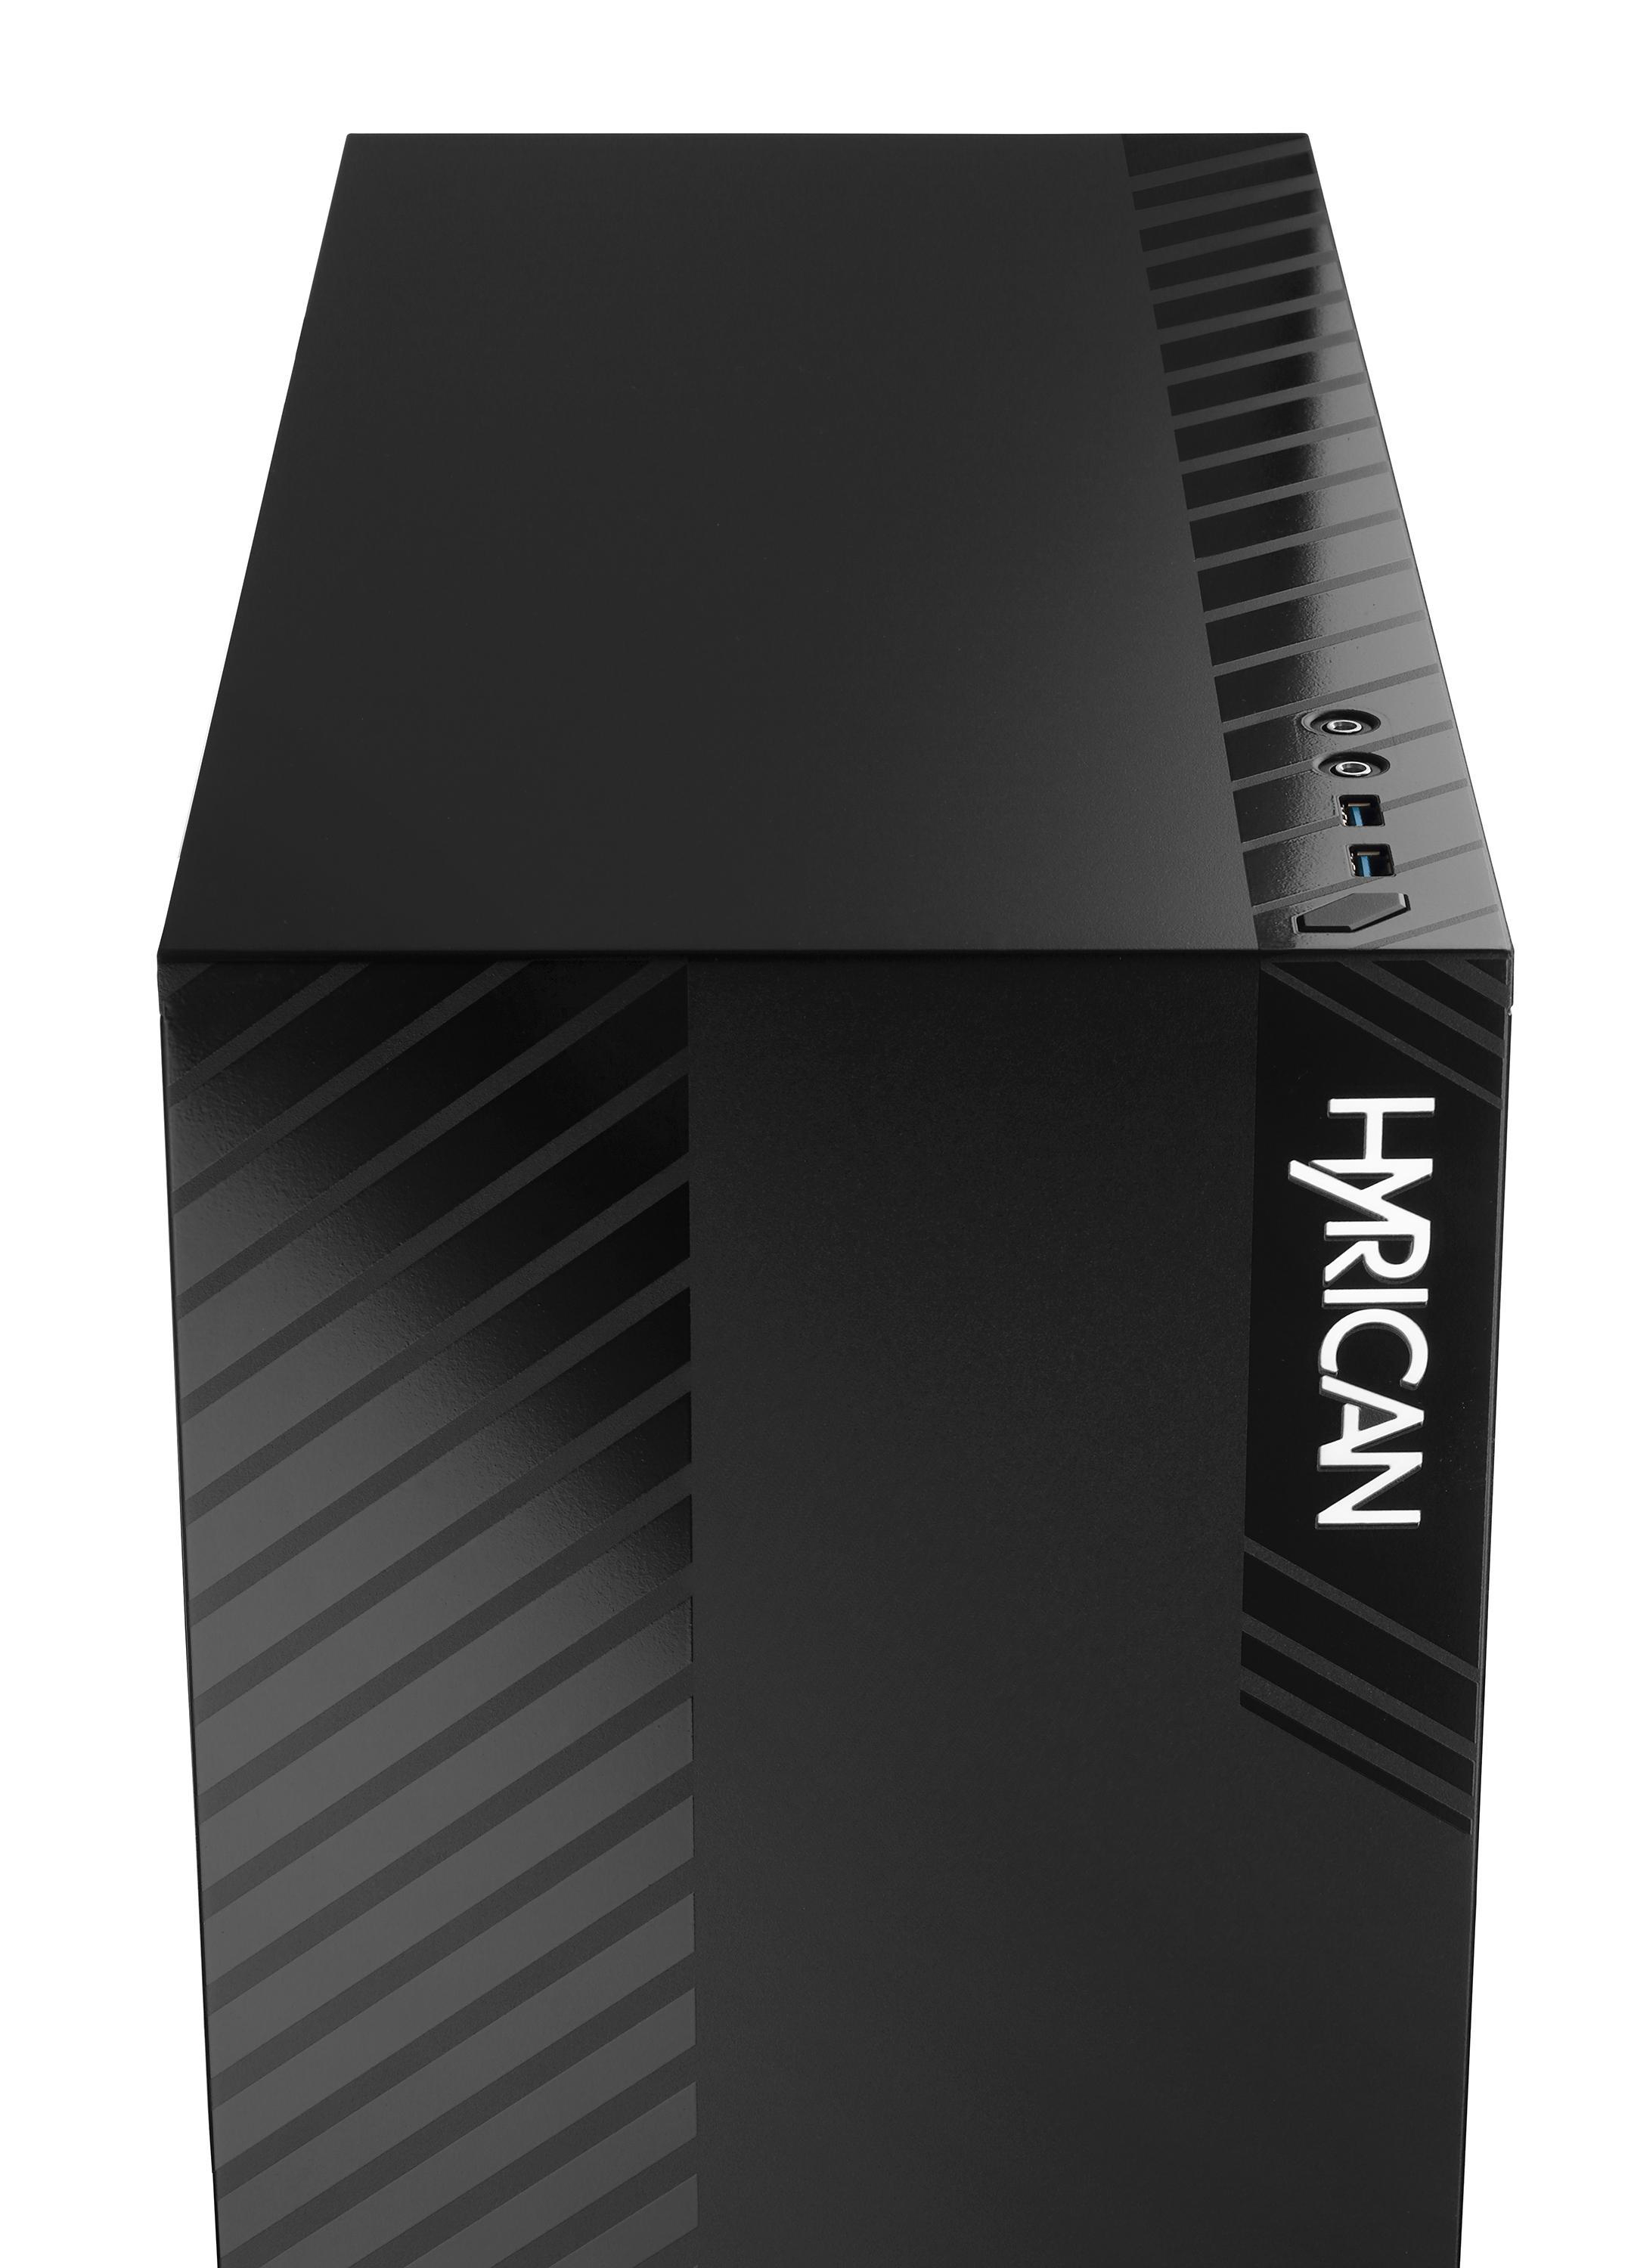 HYRICAN Alpha 6625, Windows 10 PC 1 GB GeForce 500 (64 3080 NVIDIA, RTX™ Prozessor, SSD, GB 16 5800X RAM, TB Bit), Gaming SSD